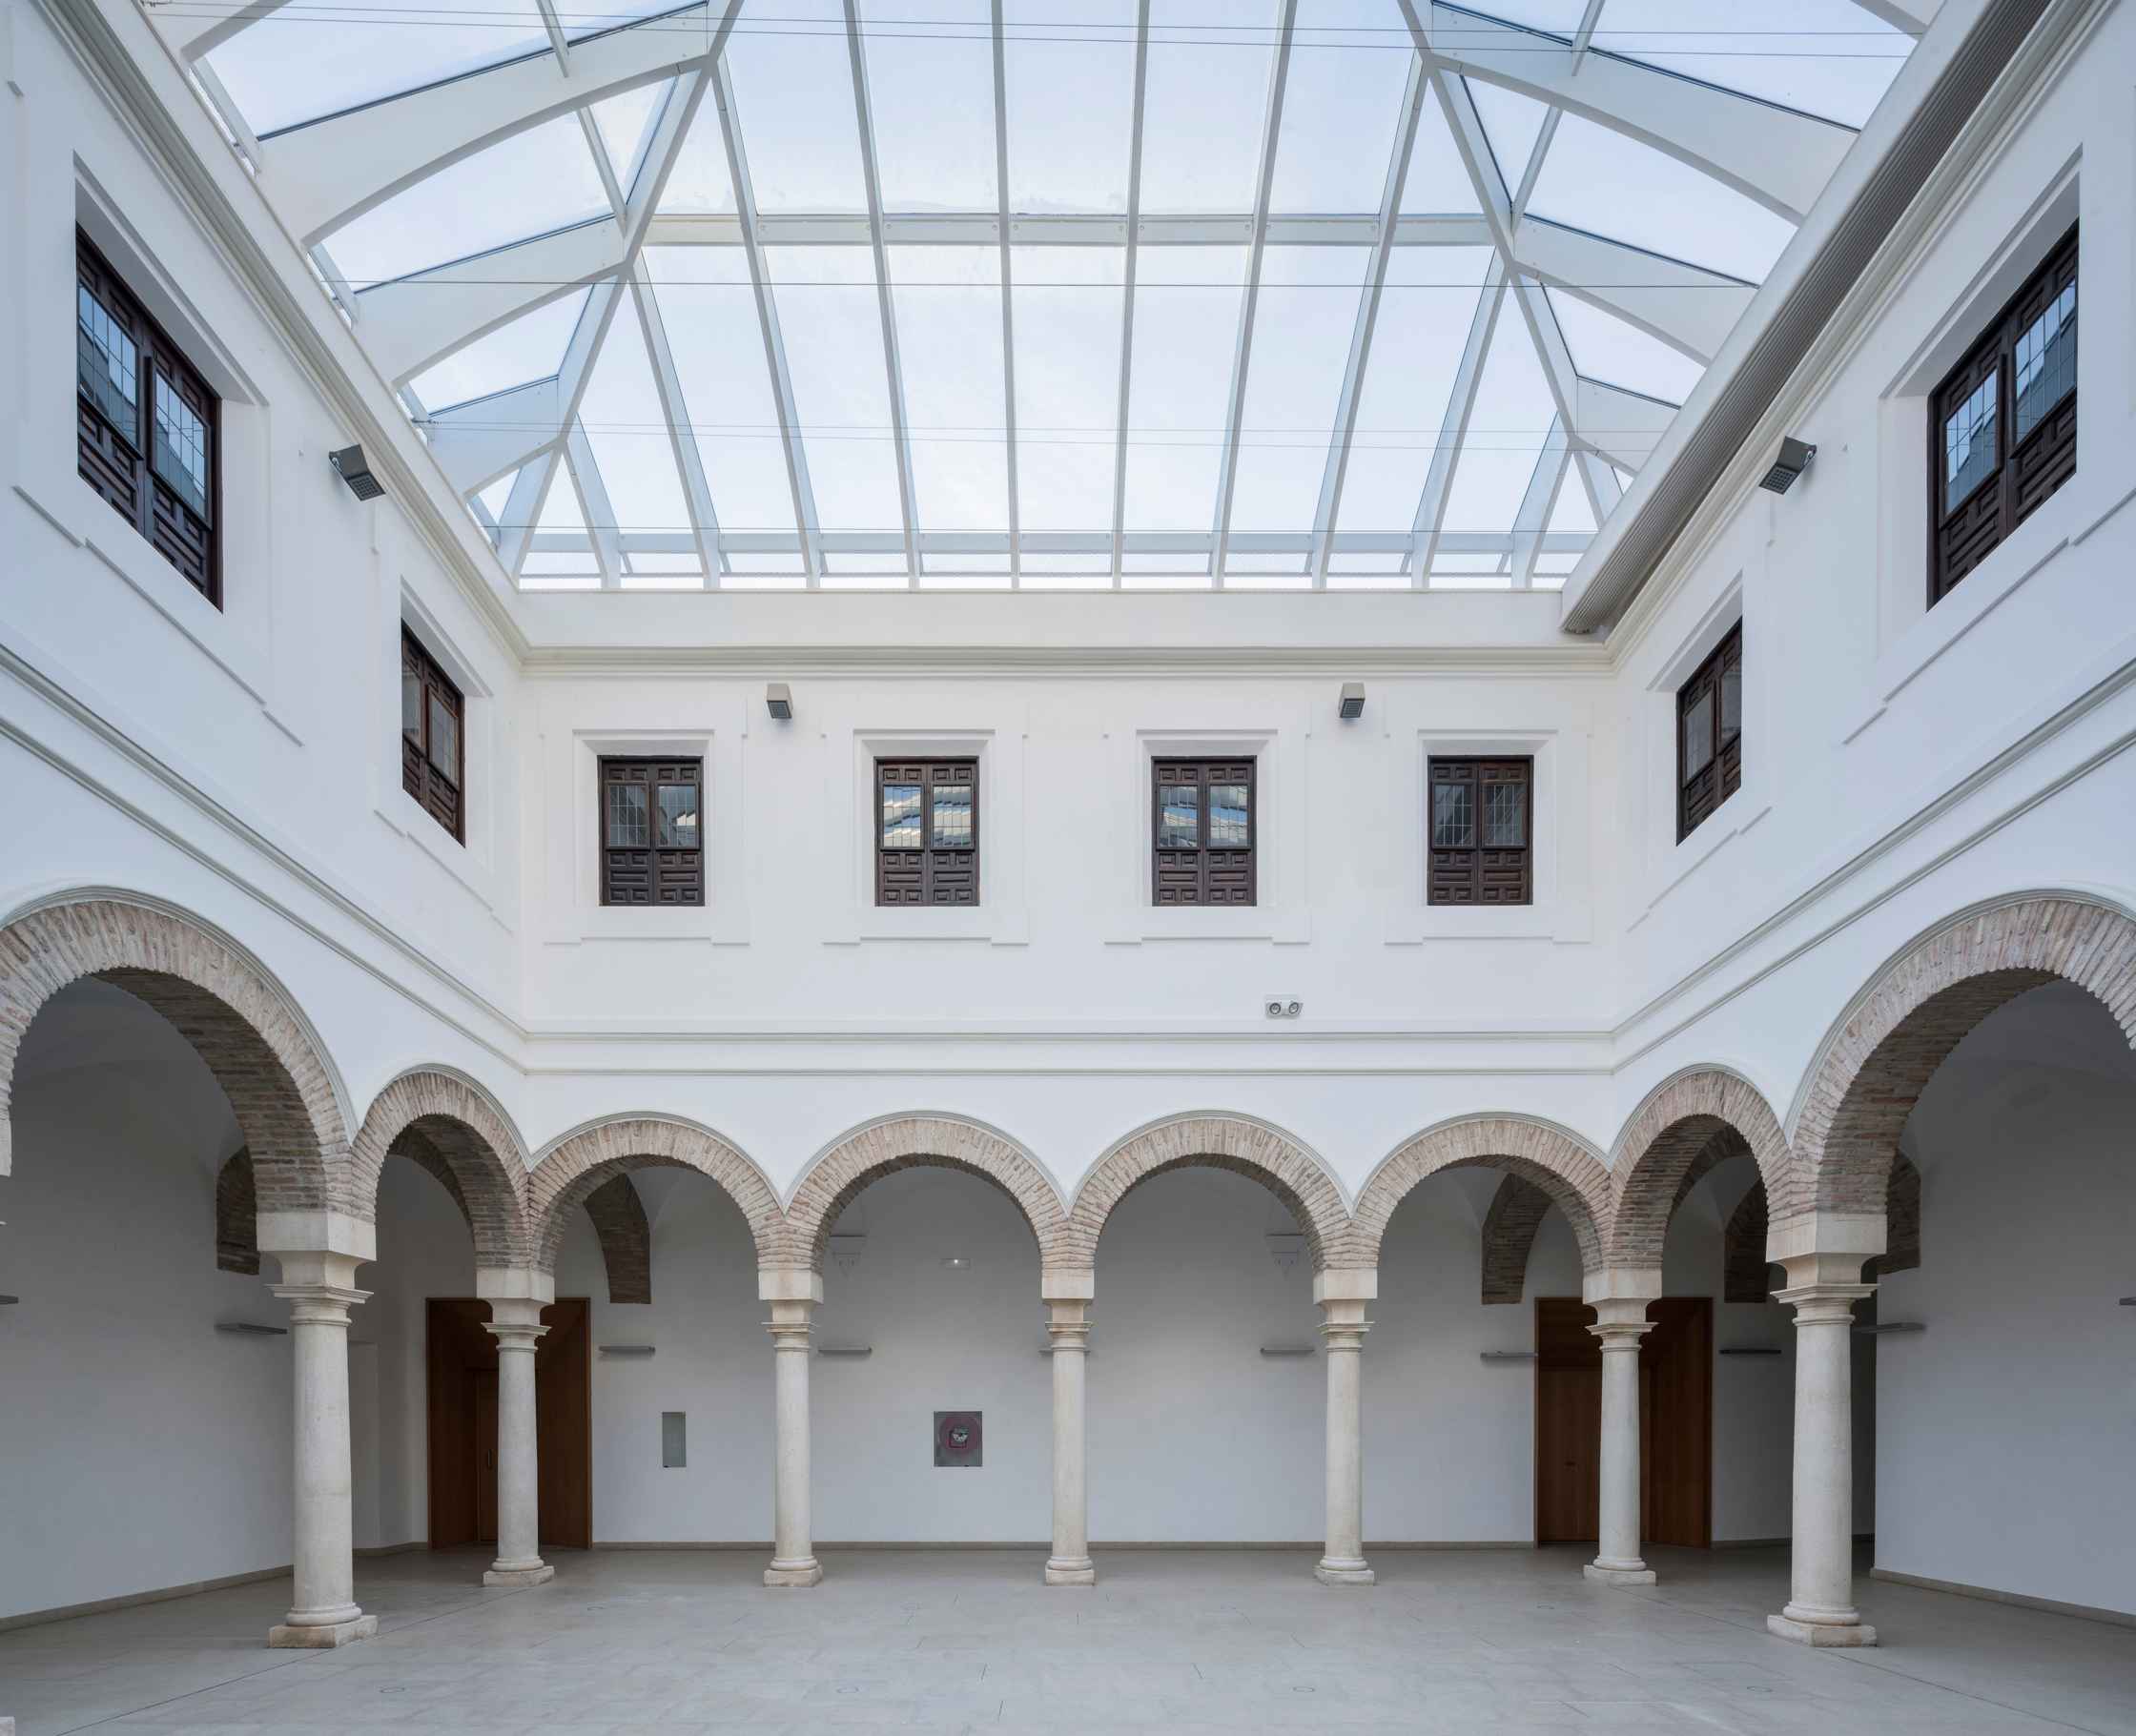 Patio/Foyer del Palacio de Congresos, un espacio de arquitectura contemporánea en pleno corazón de la judería, junto a la Mezquita-Catedral de Córdoba (España). Proyecto: LAP arquitectos.